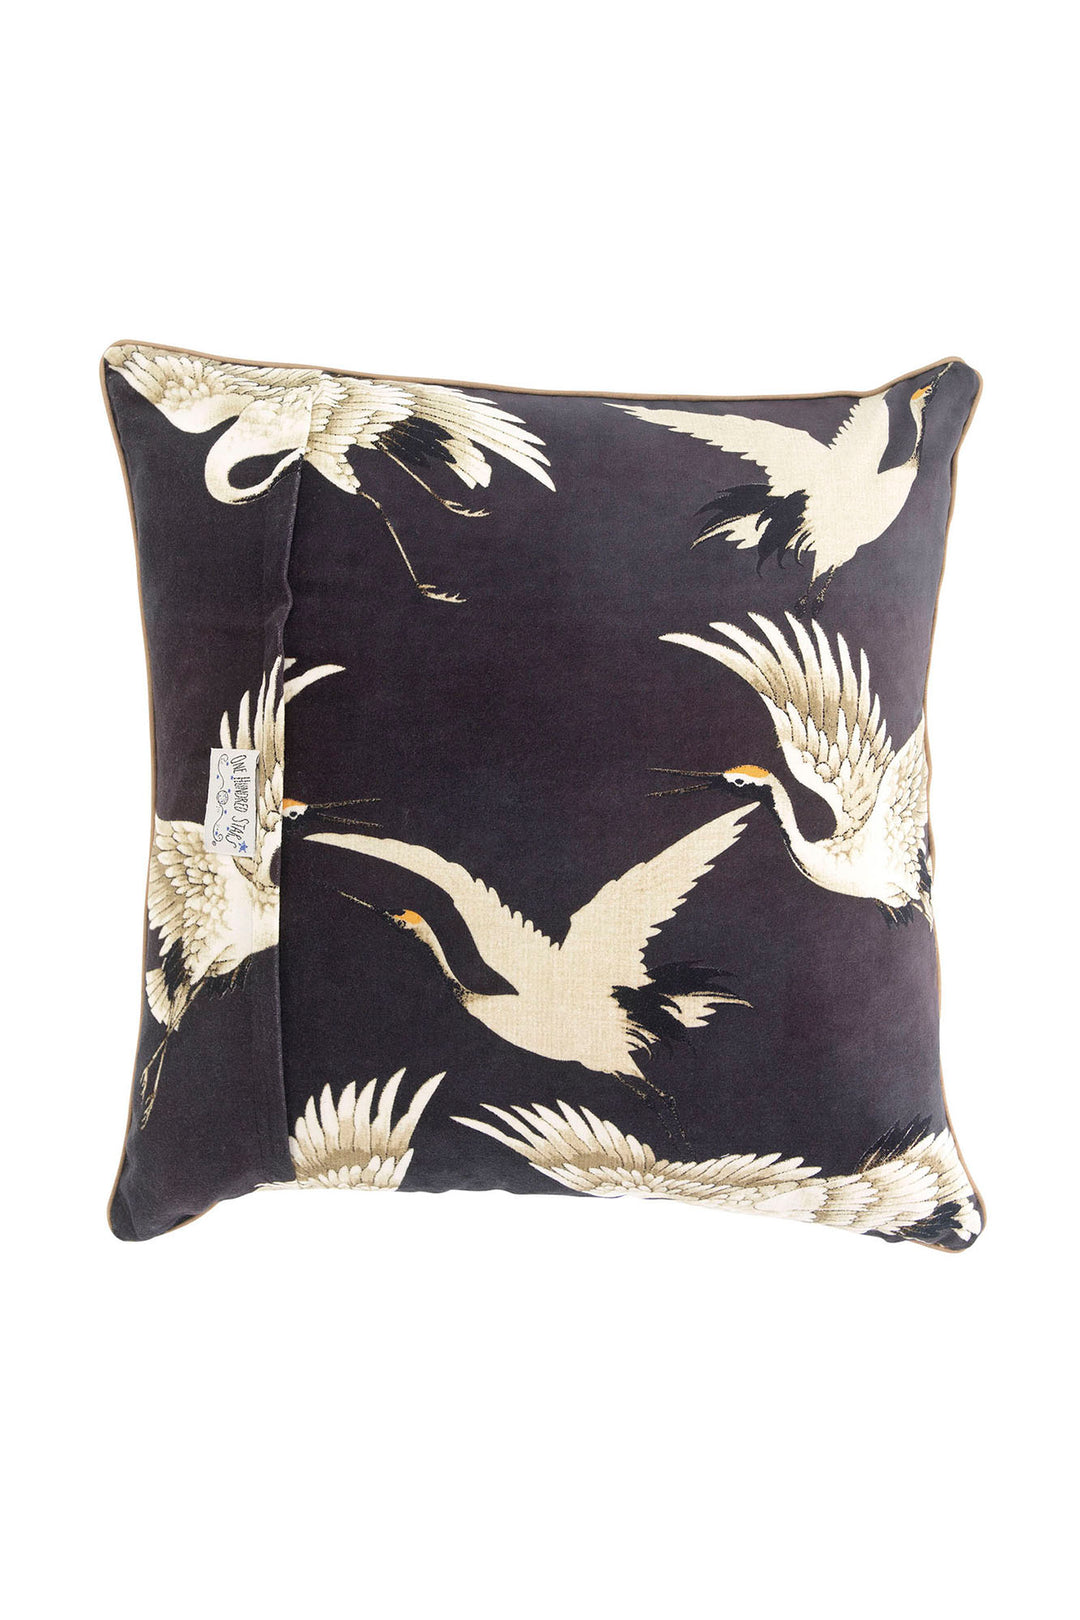 Stork Charcoal Grey Square Velvet Cushion